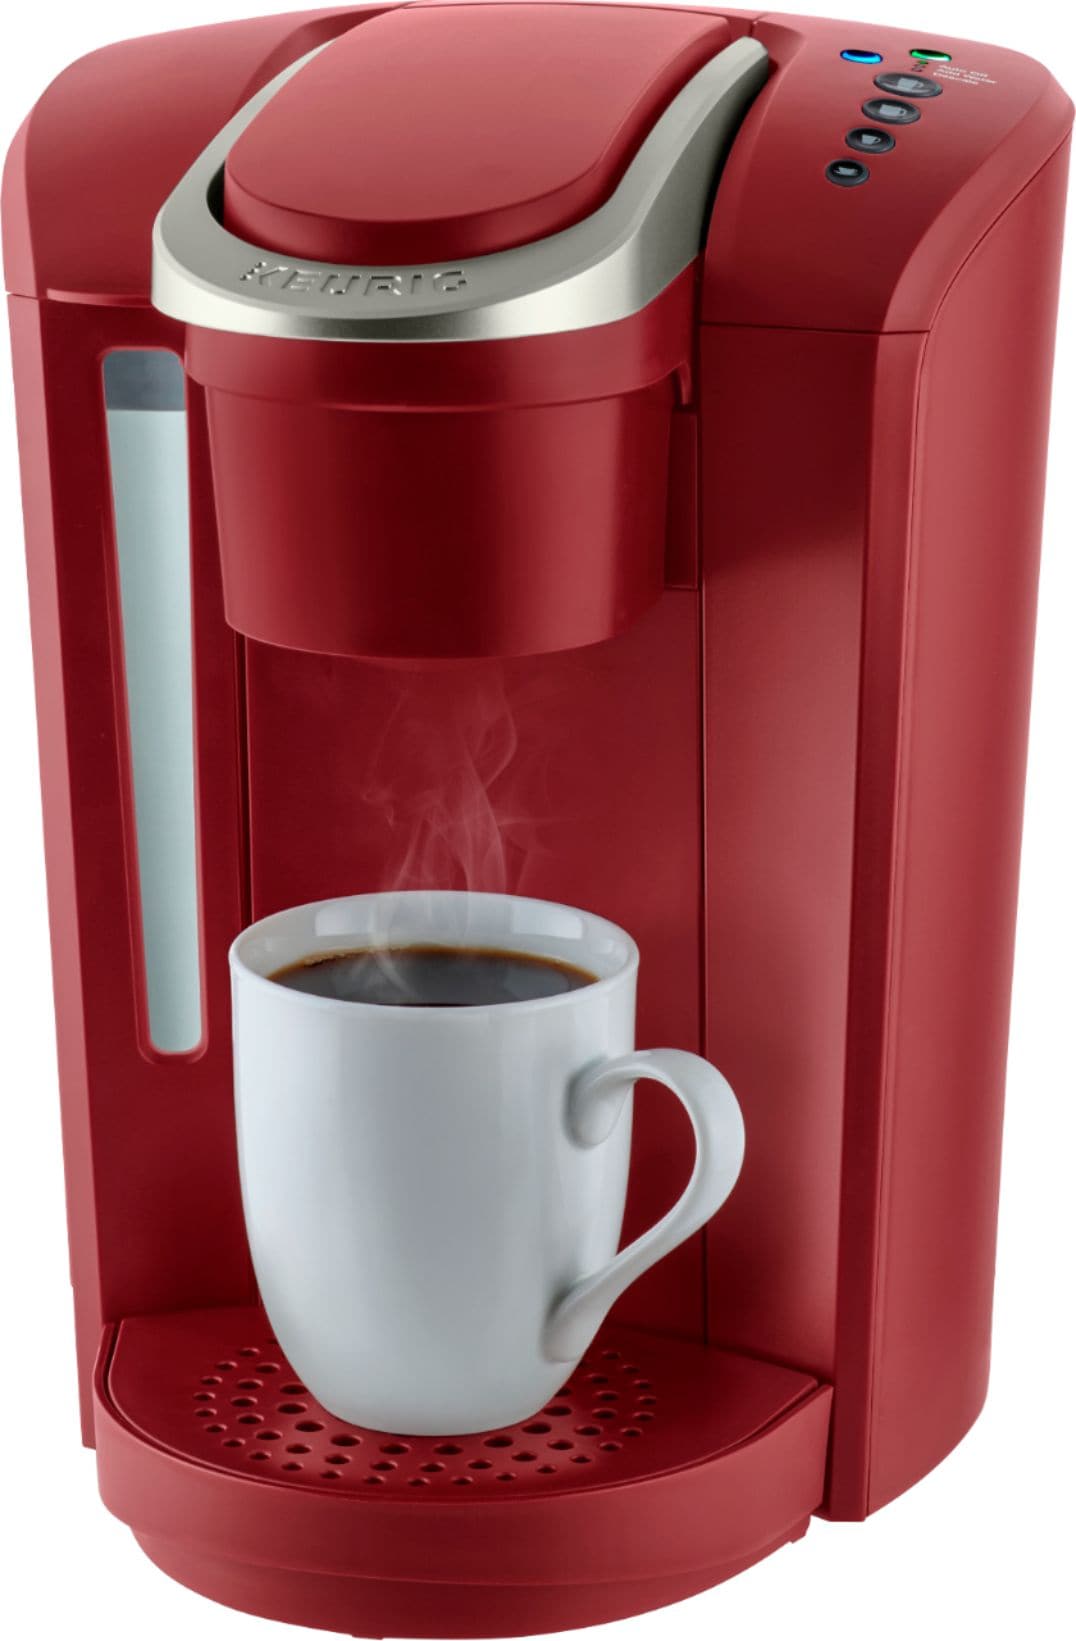 Keurig - K-Select Single-Serve K-Cup Pod Coffee Maker - Vintage Red_2